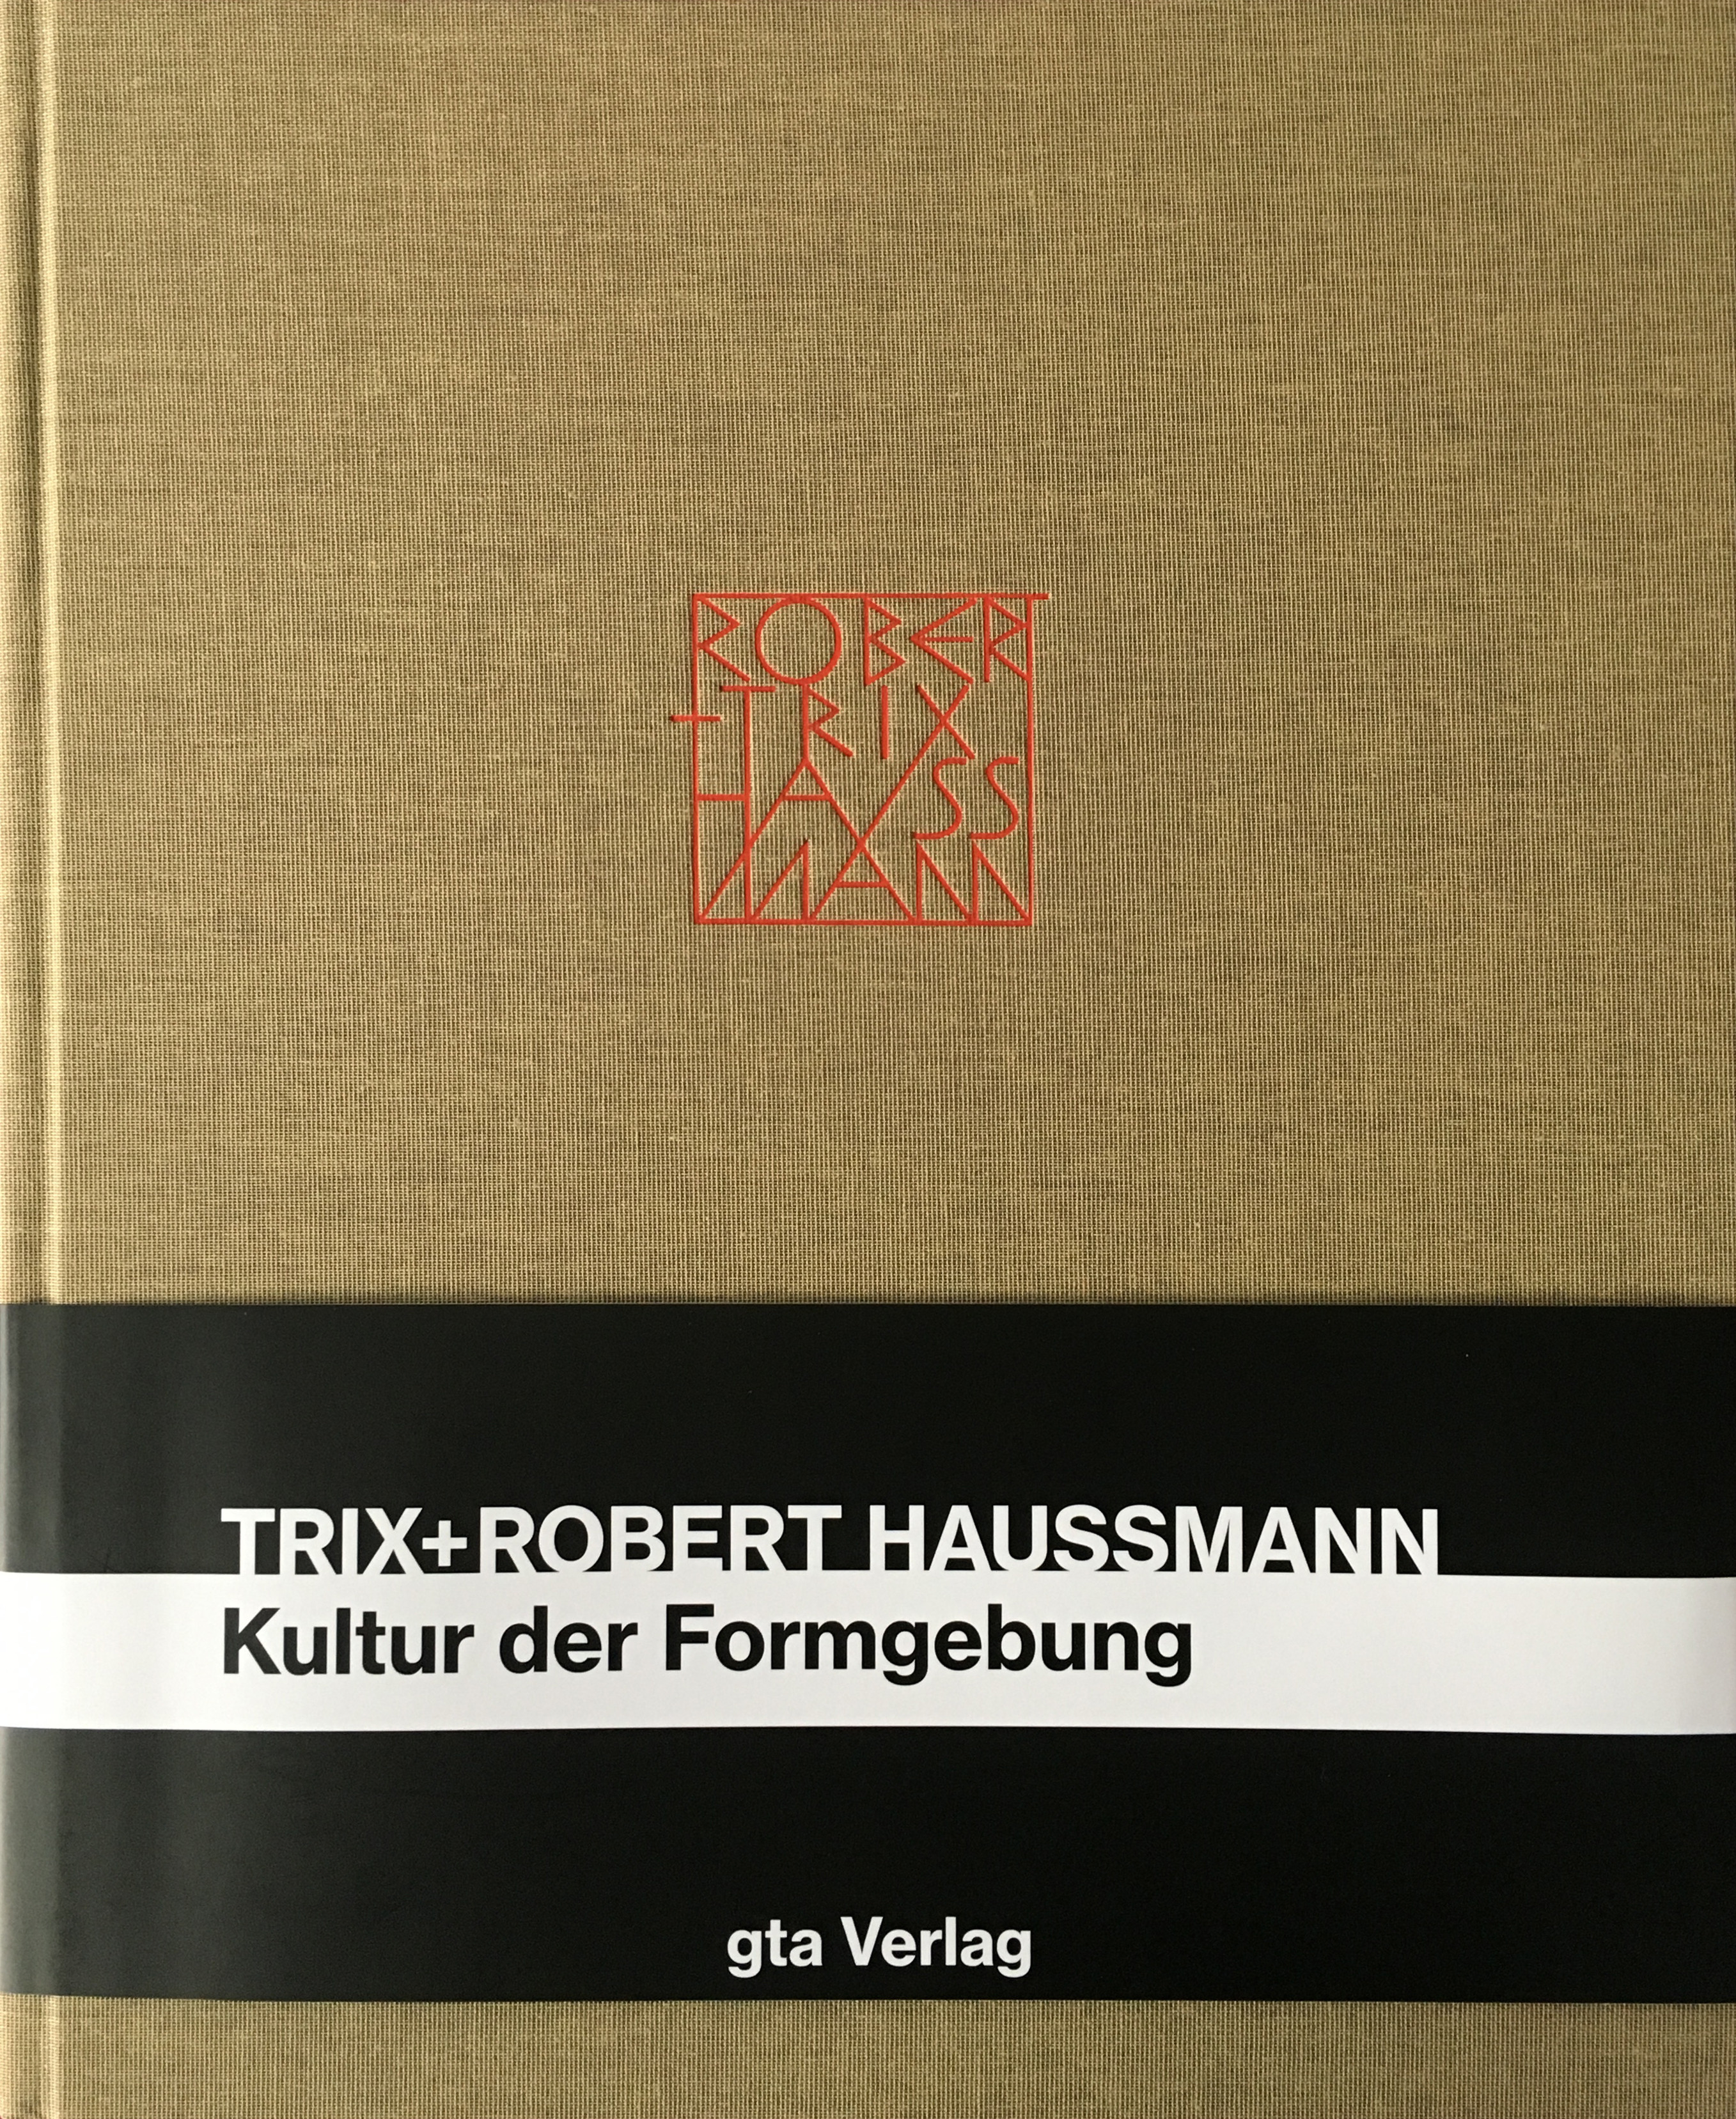 Trix und Robert Haussmann Juri Steiner - Picture 1 of 1